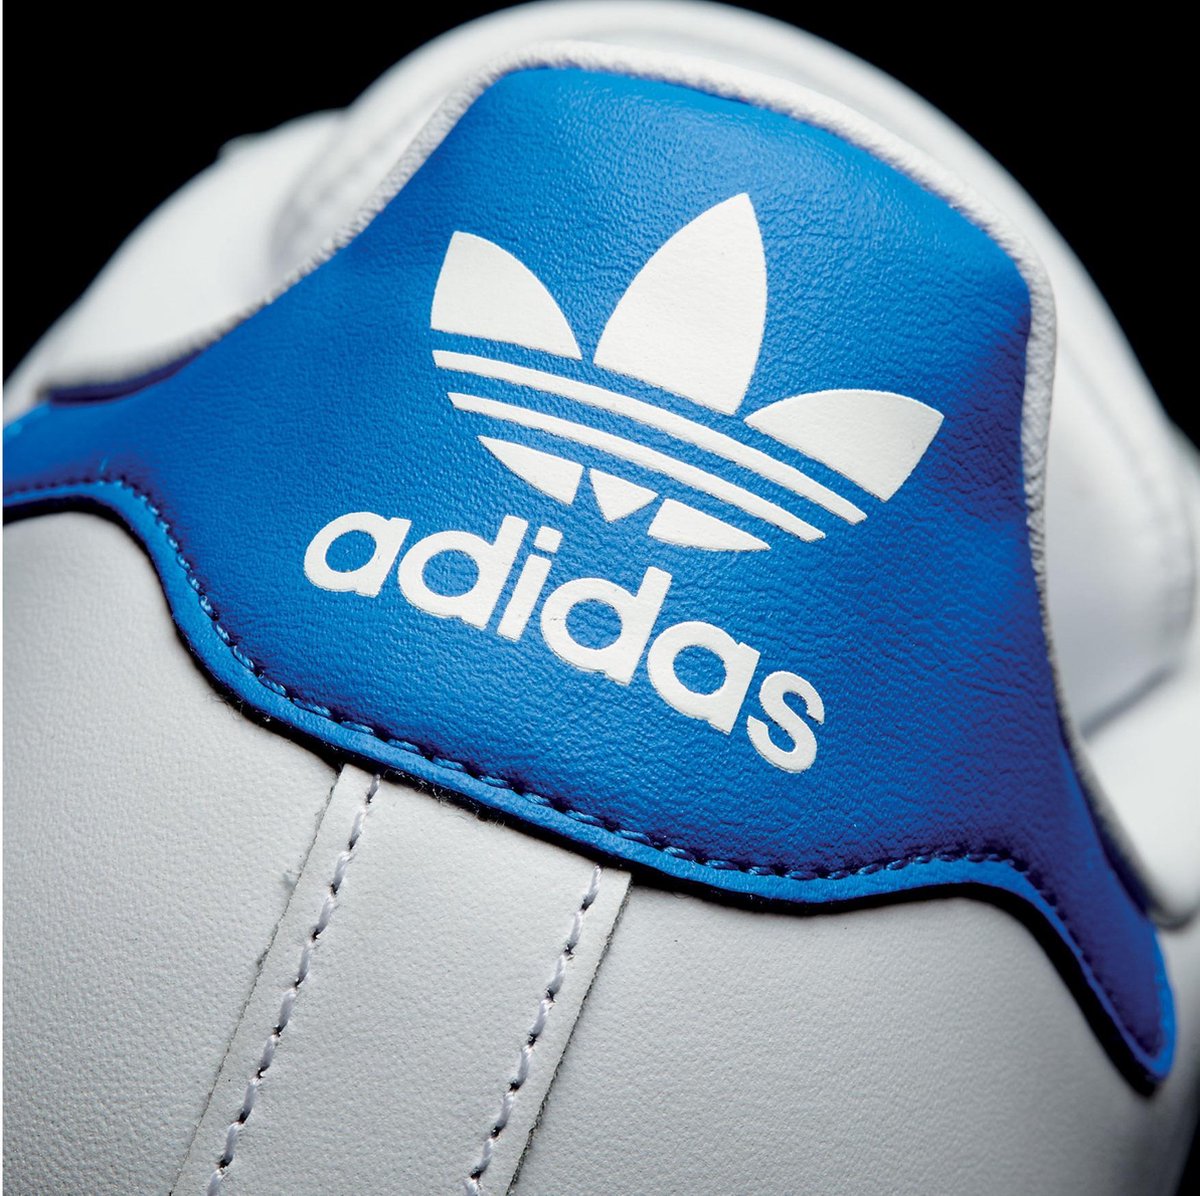 Verplicht Geaccepteerd wetenschappelijk adidas Superstar Sneakers Heren Sneakers - Maat 42 2/3 - Mannen - wit/blauw/rood  | bol.com